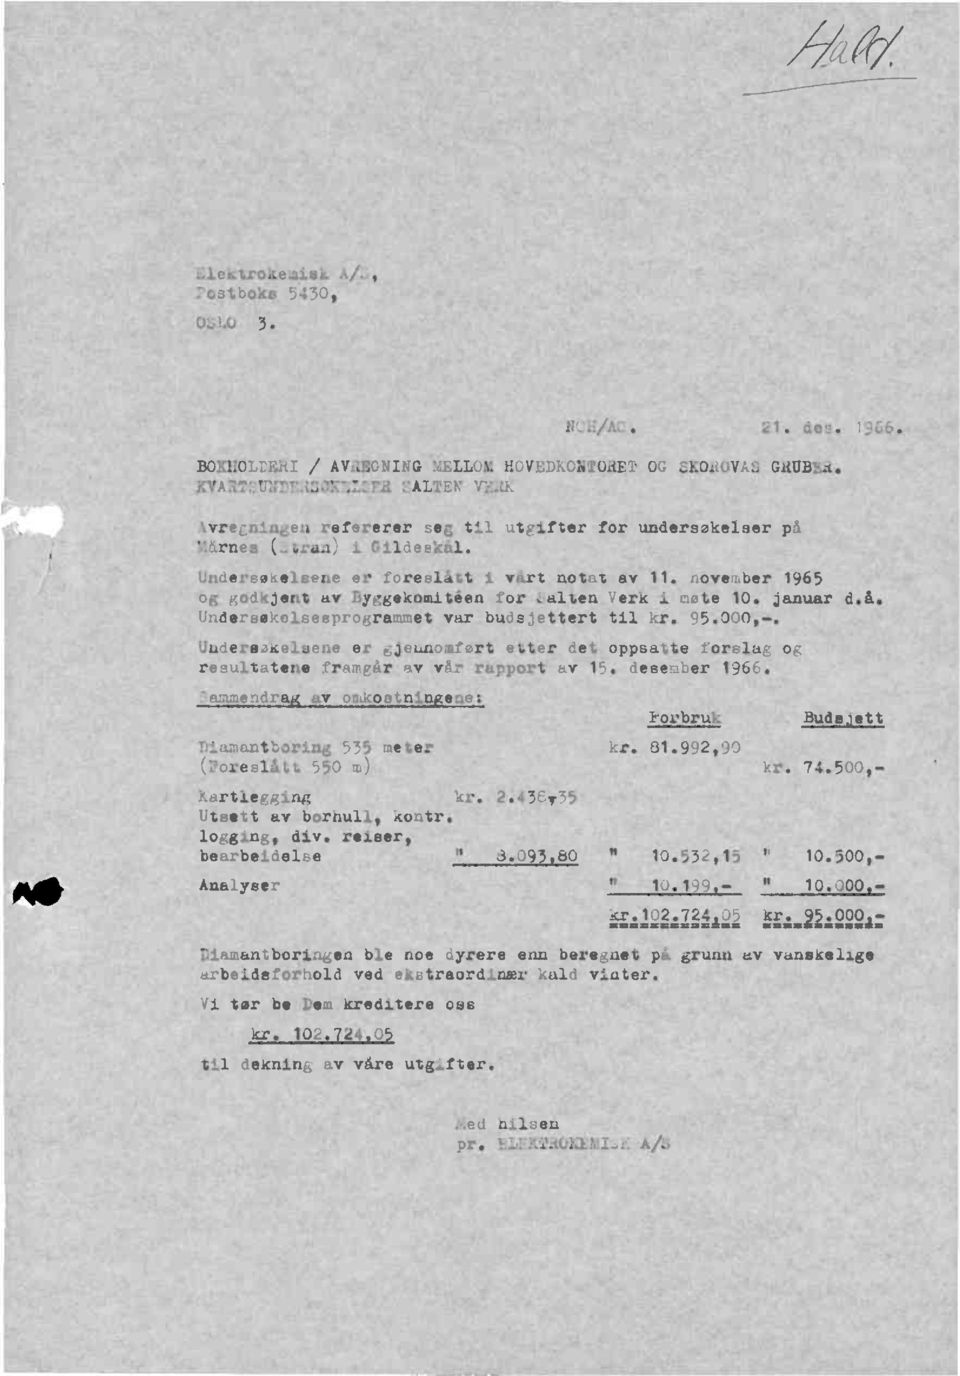 november1965 og godkjentav Byggekomiteenfor :.altenverk i mete 10. januard.å. Undereekelseeprogrammet var budejetterttil kr. 95.000,-.